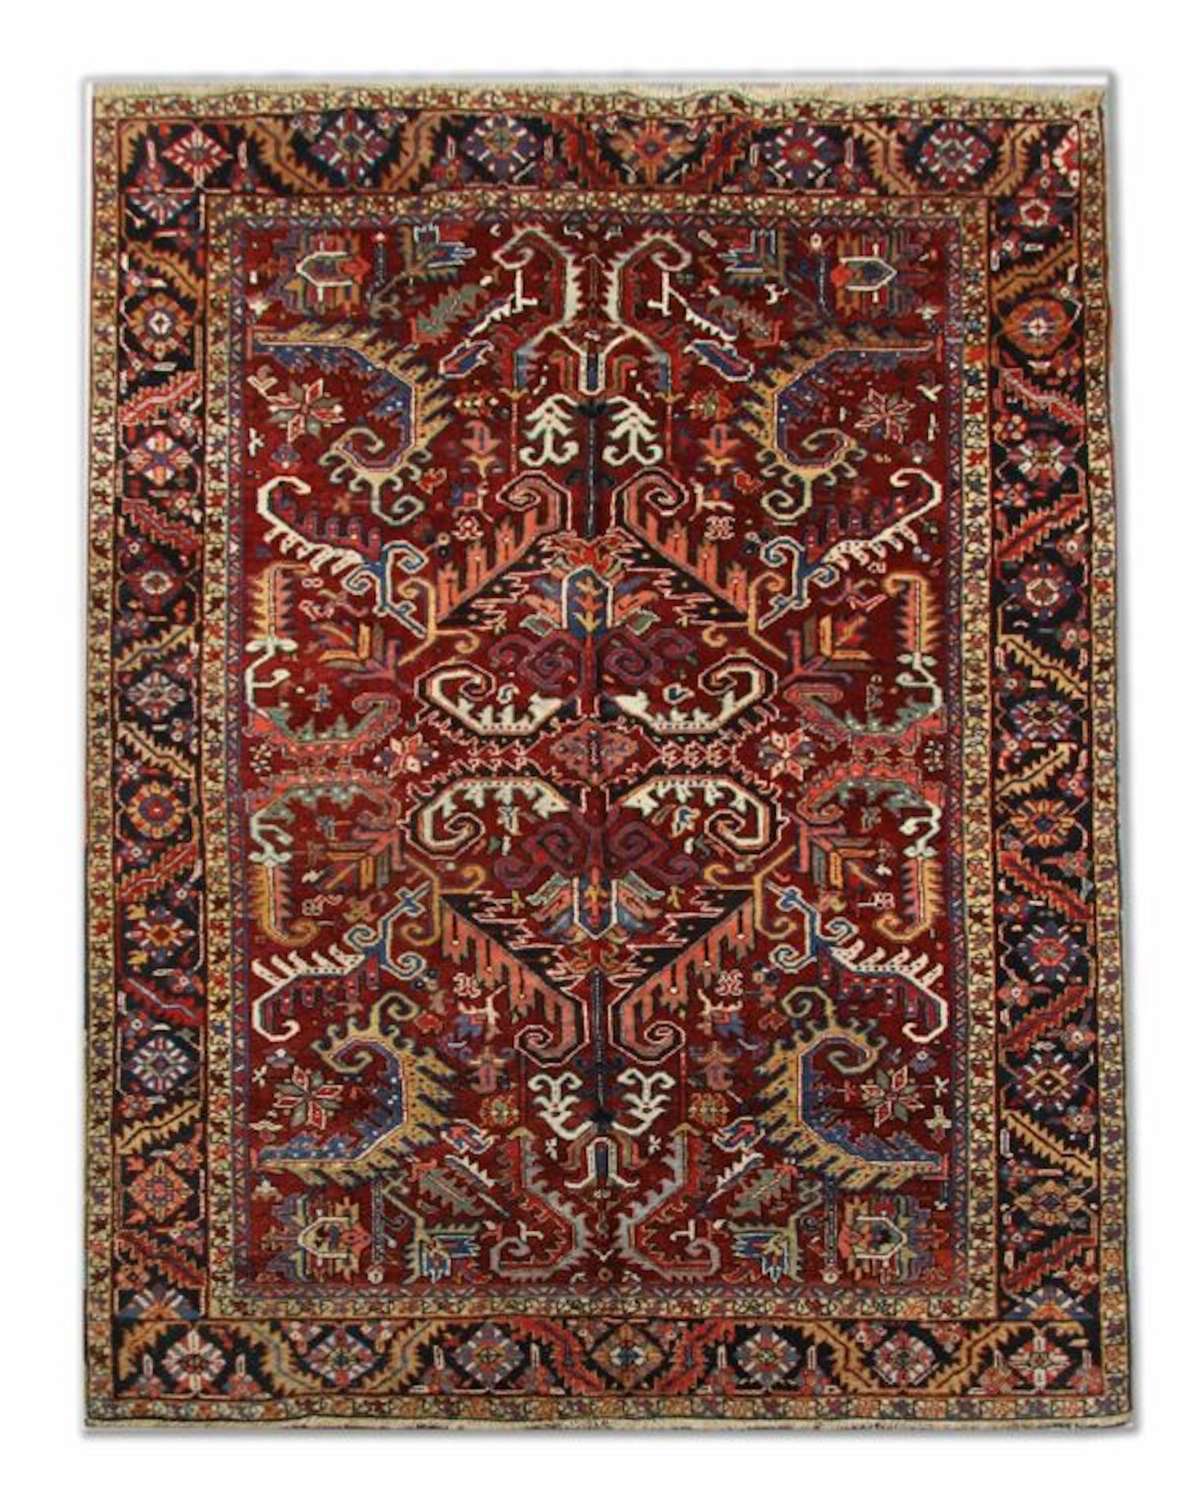 Antique Rugs, Persian Carpet, Heriz Carpet